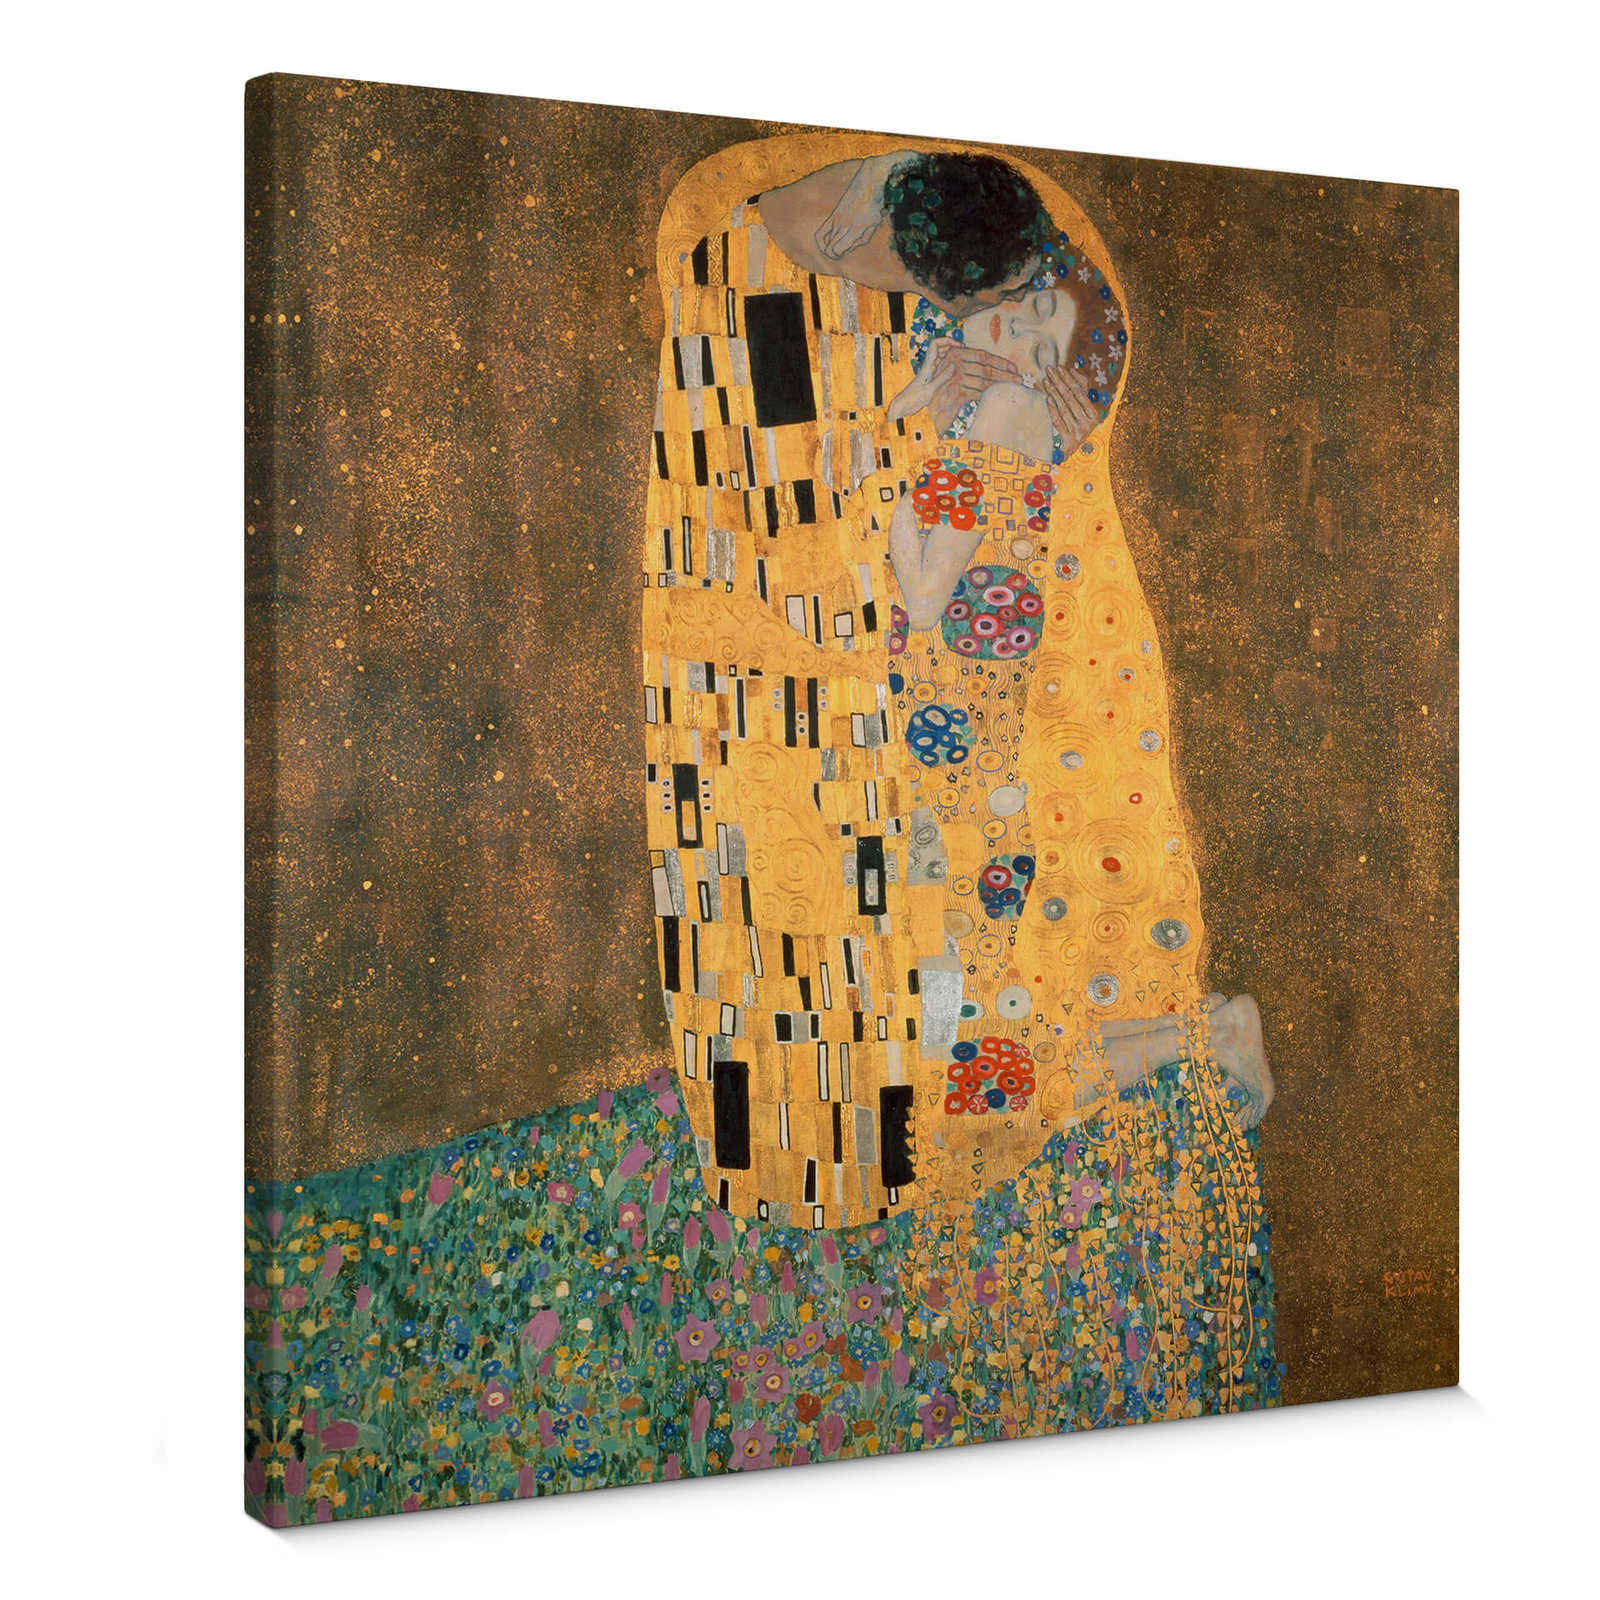         Leinwandbild "Der Kuss" von Gustav Klimt – 0,50 m x 0,50 m
    